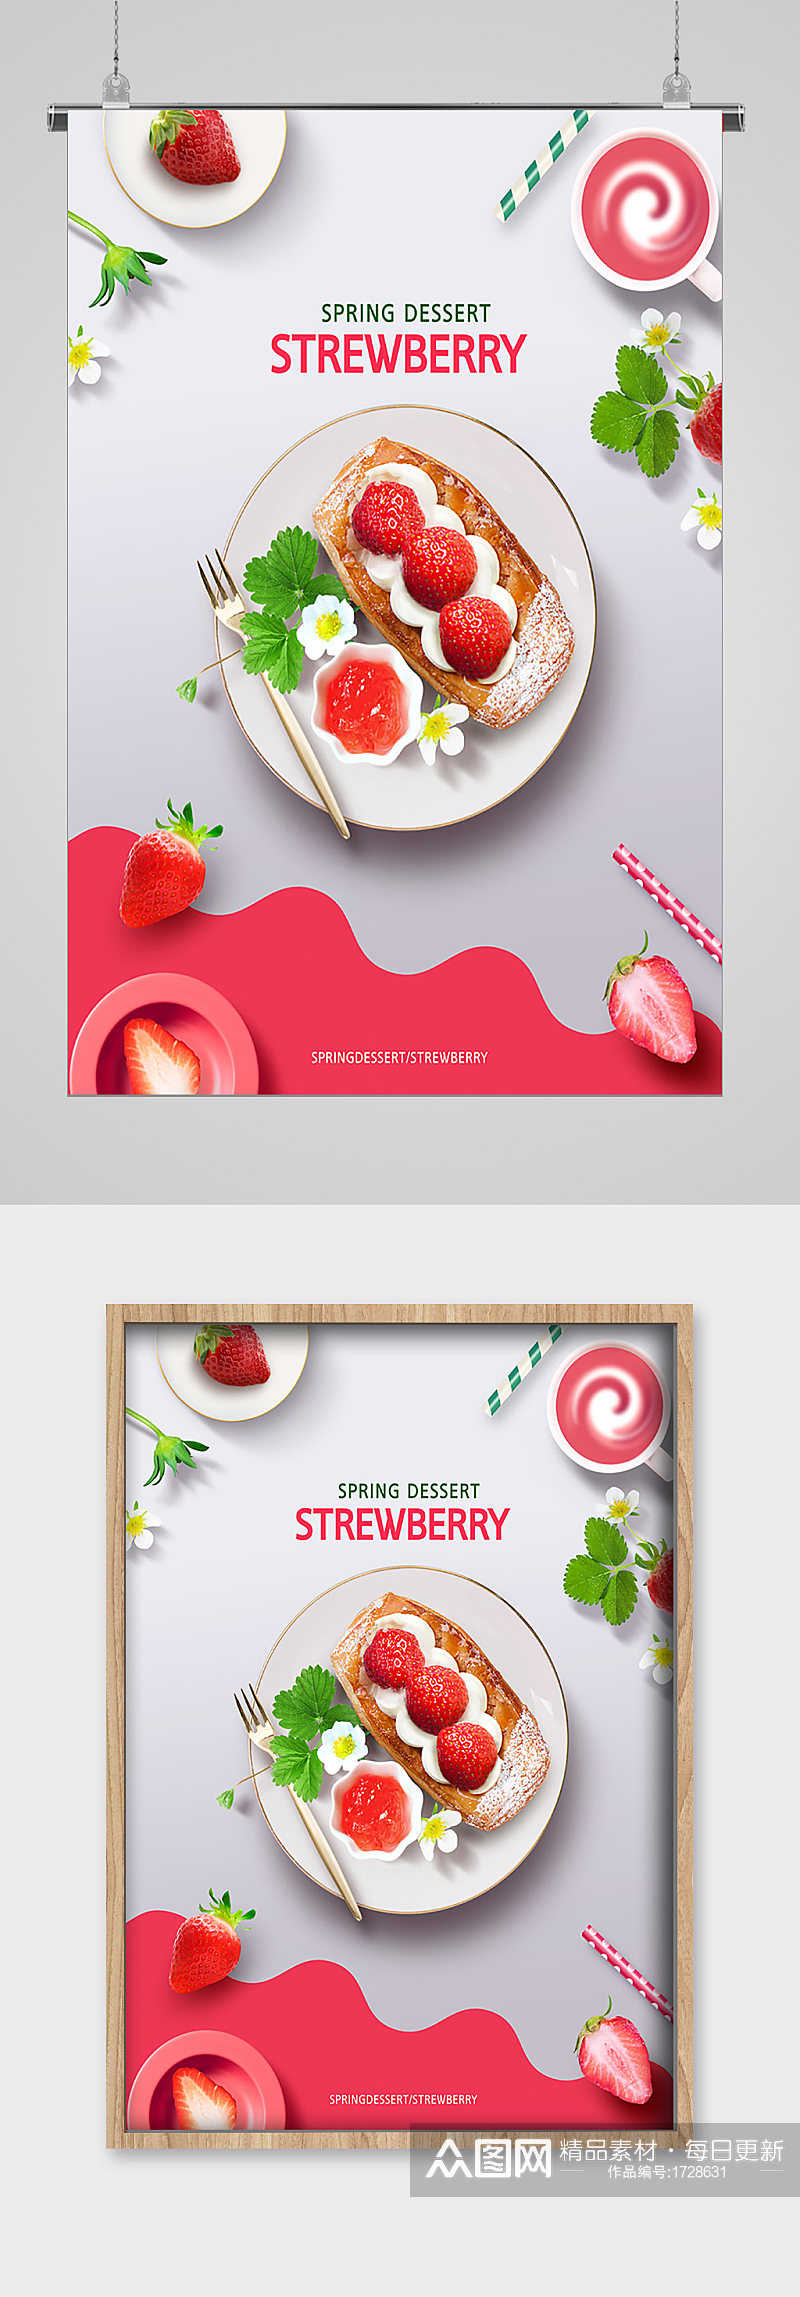 草莓冷饮甜品美食宣传海报素材